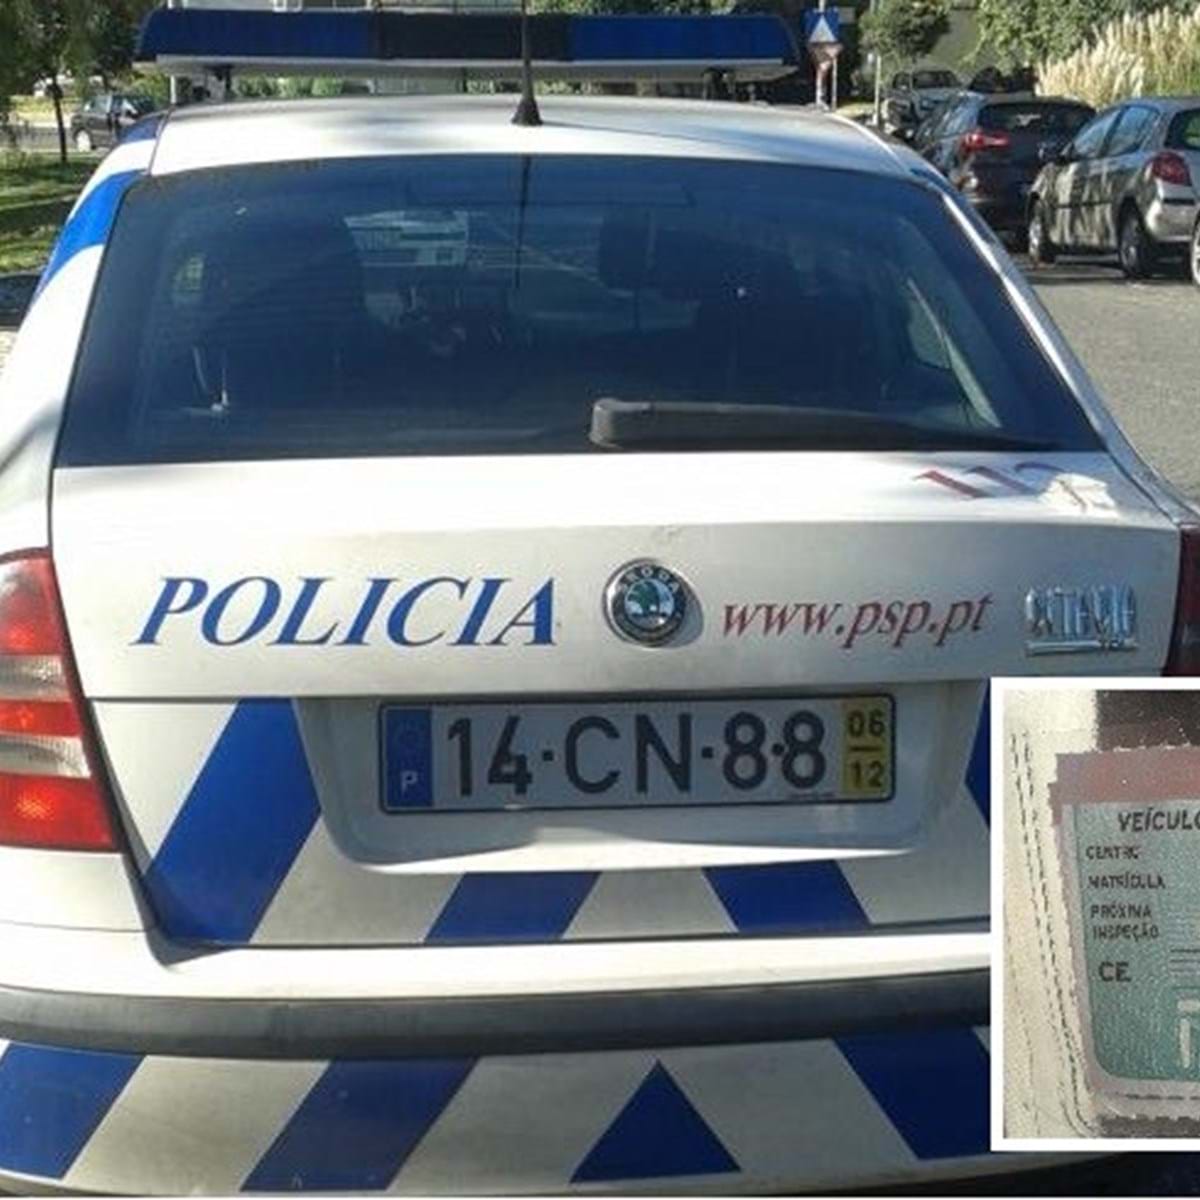 PSP na Grande Lisboa com menos de um carro-patrulha por esquadra